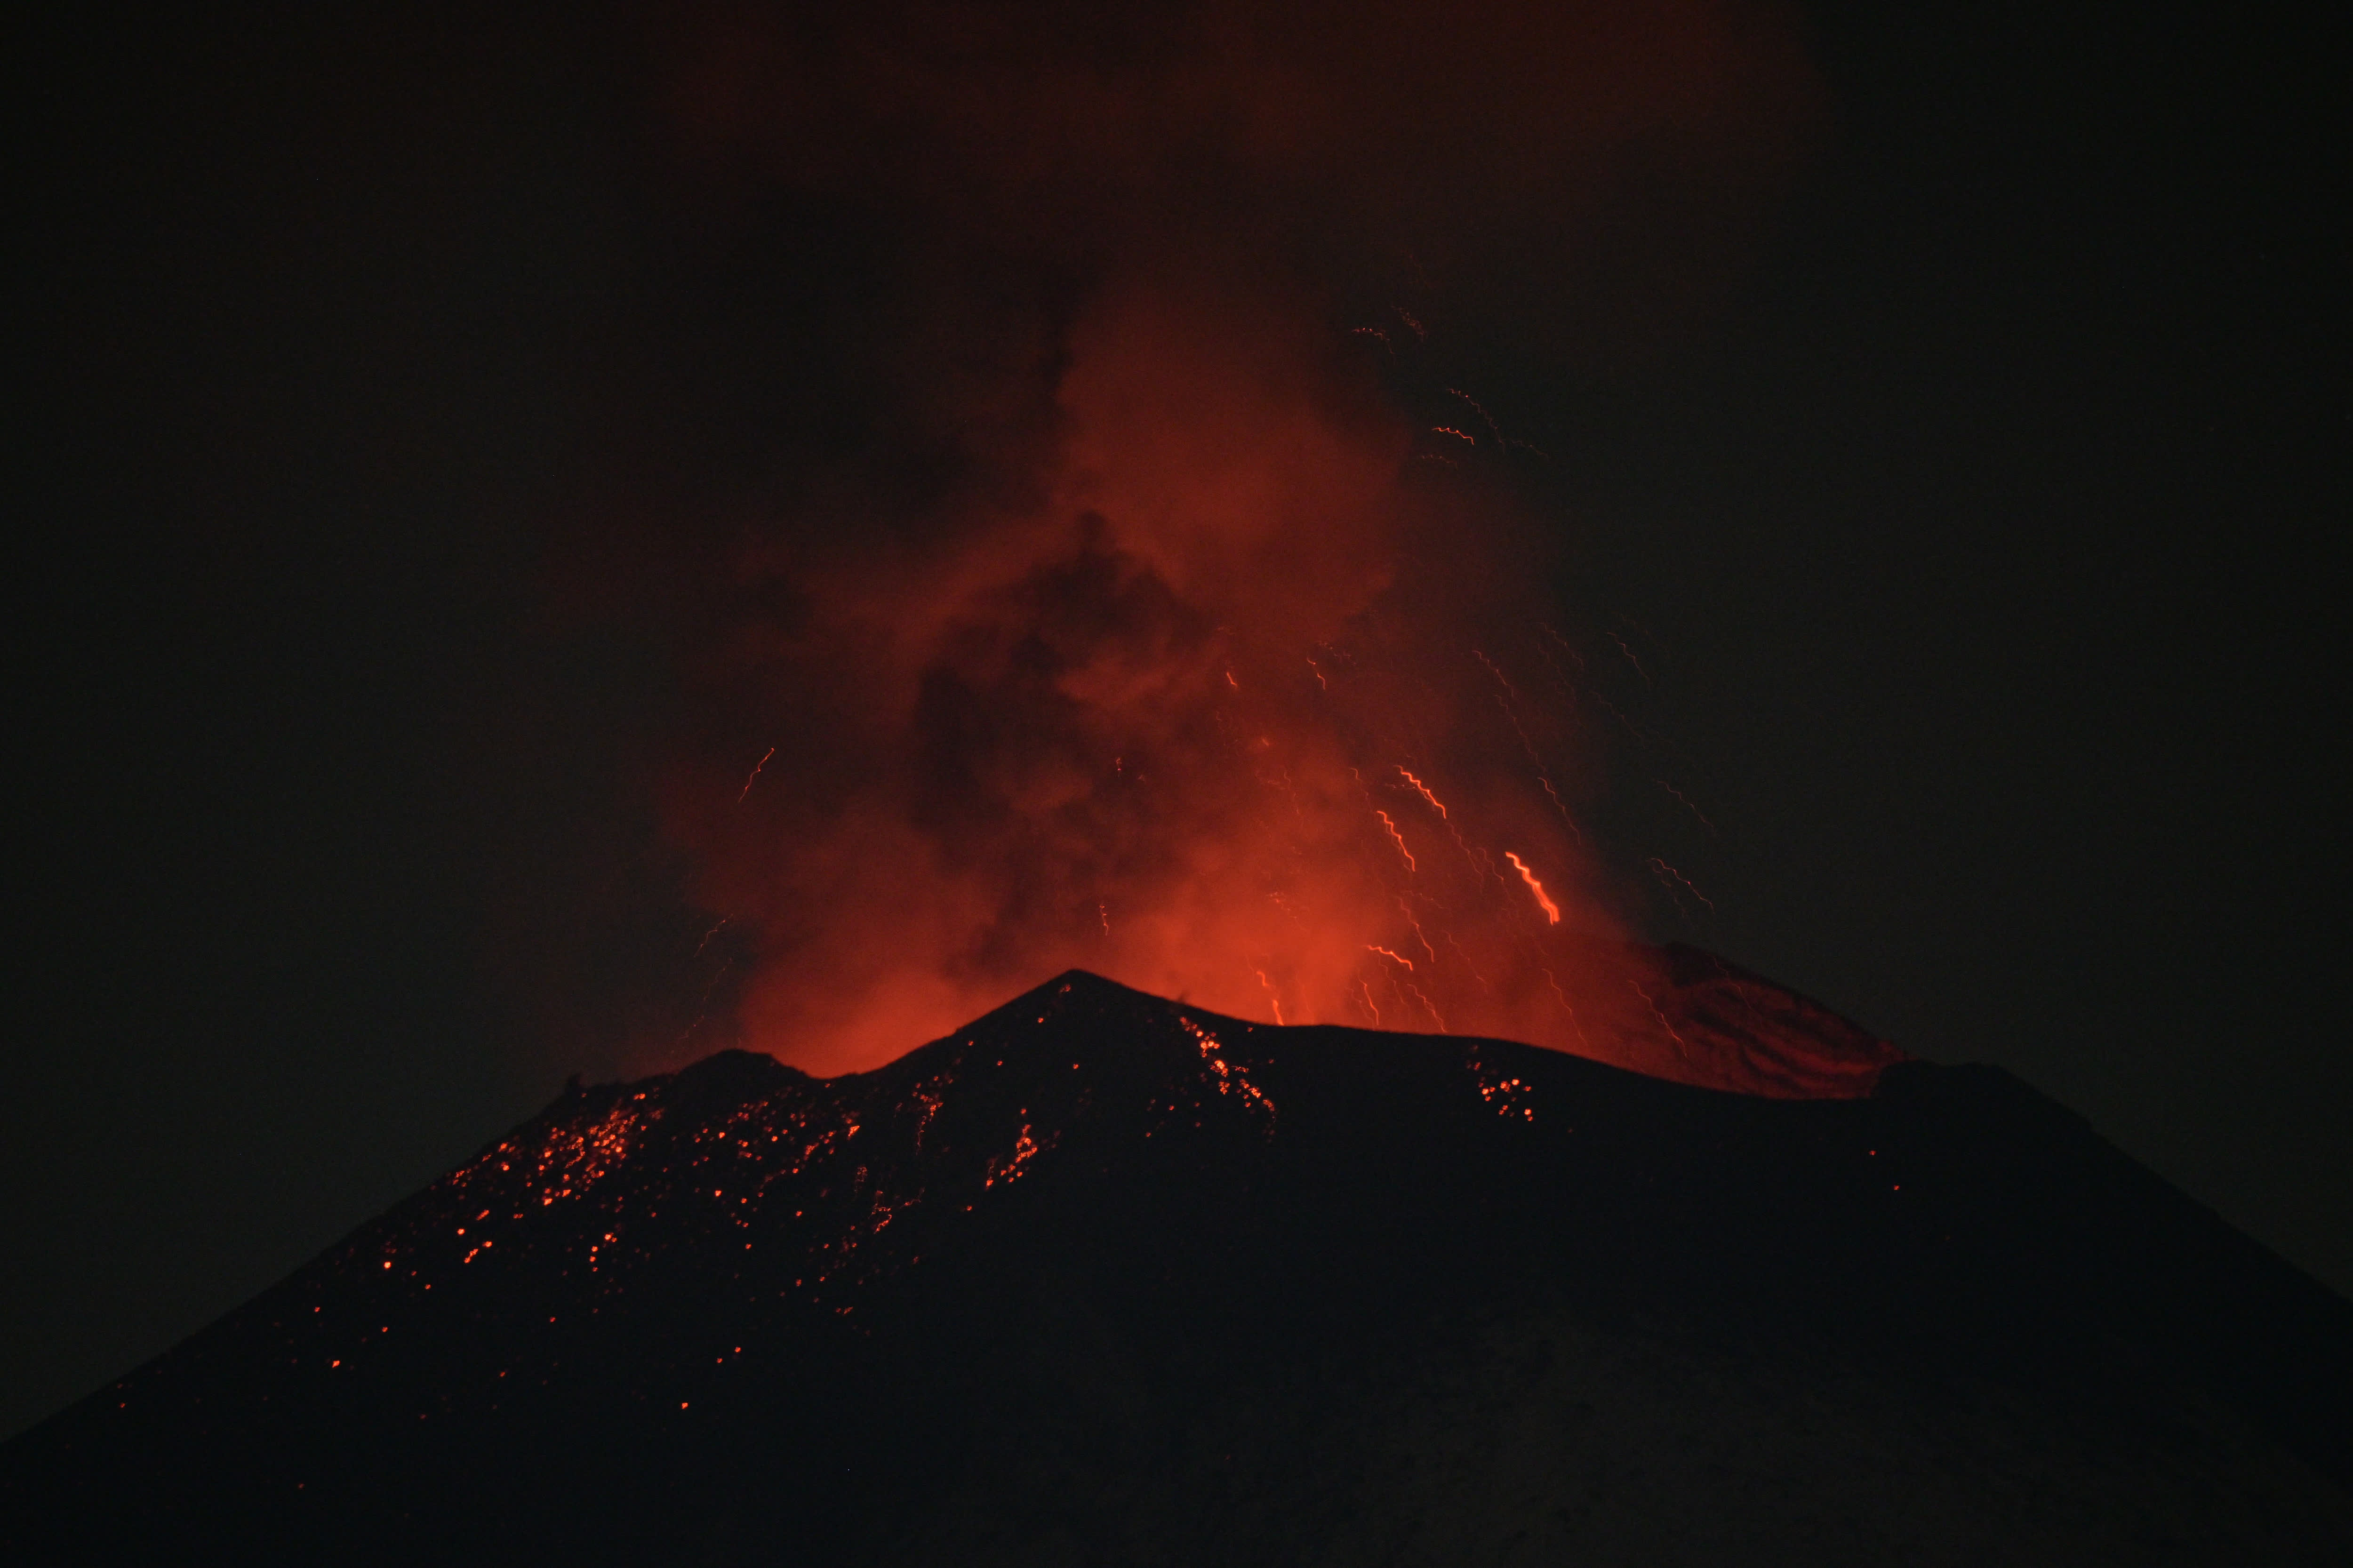 這是5月22日在墨西哥普埃布拉州拍攝的波波卡特佩特火山。